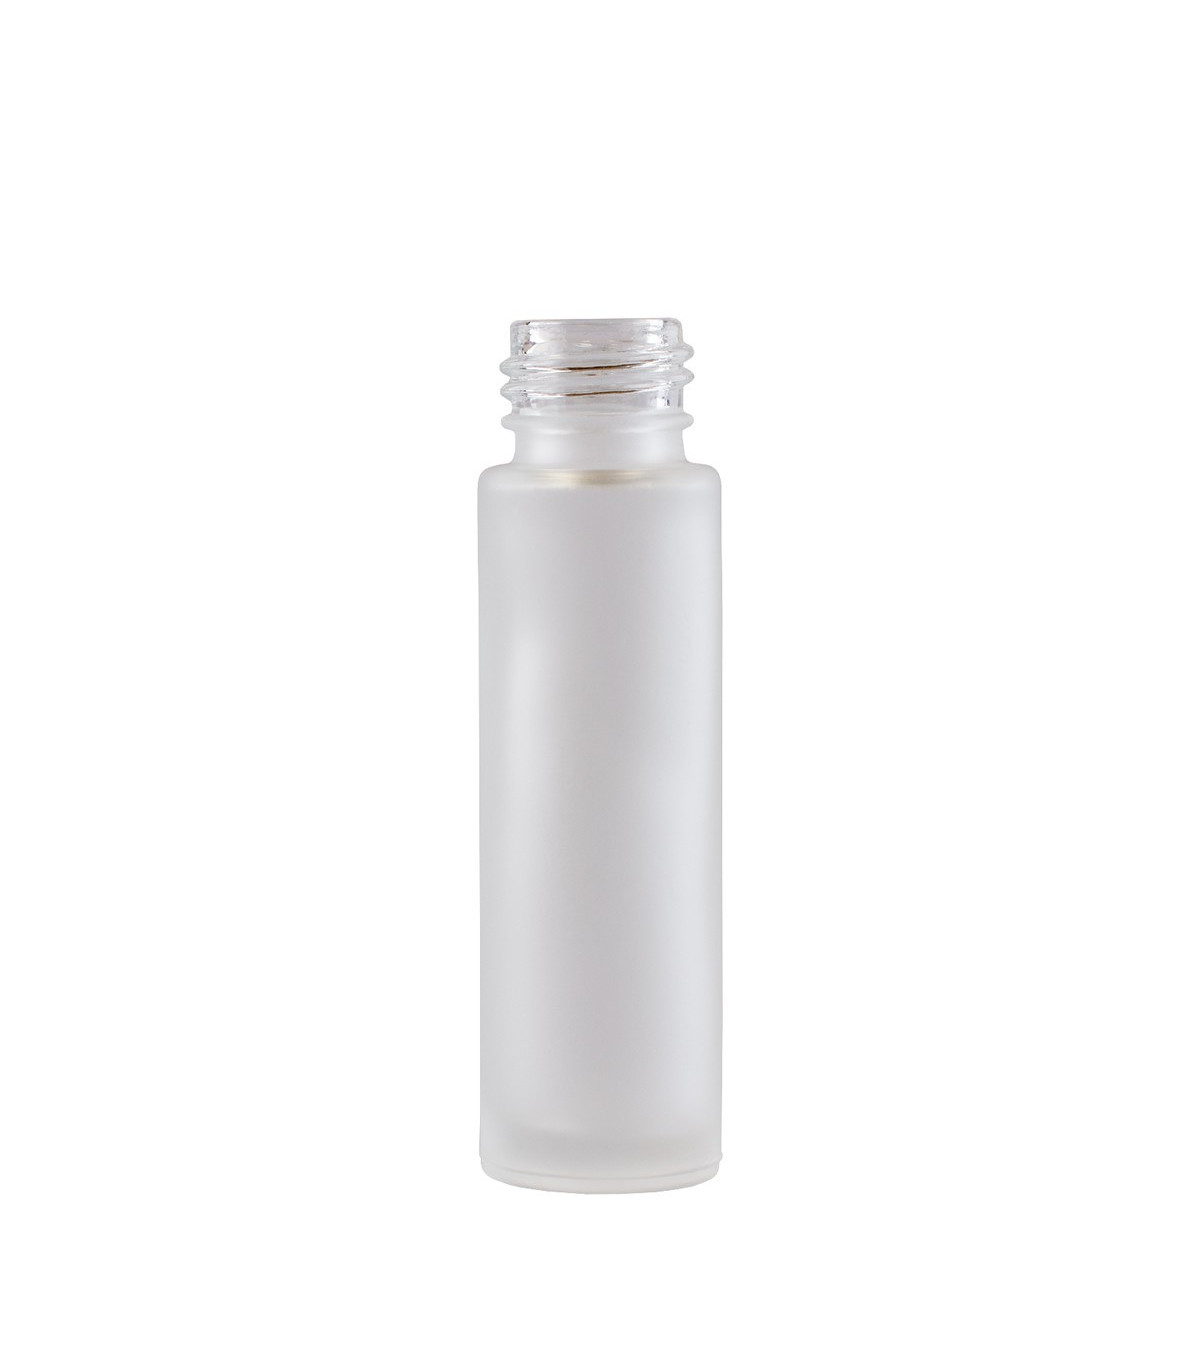 Bază Recipient Roll-On mini sticlă Incoloră mată 10 ml